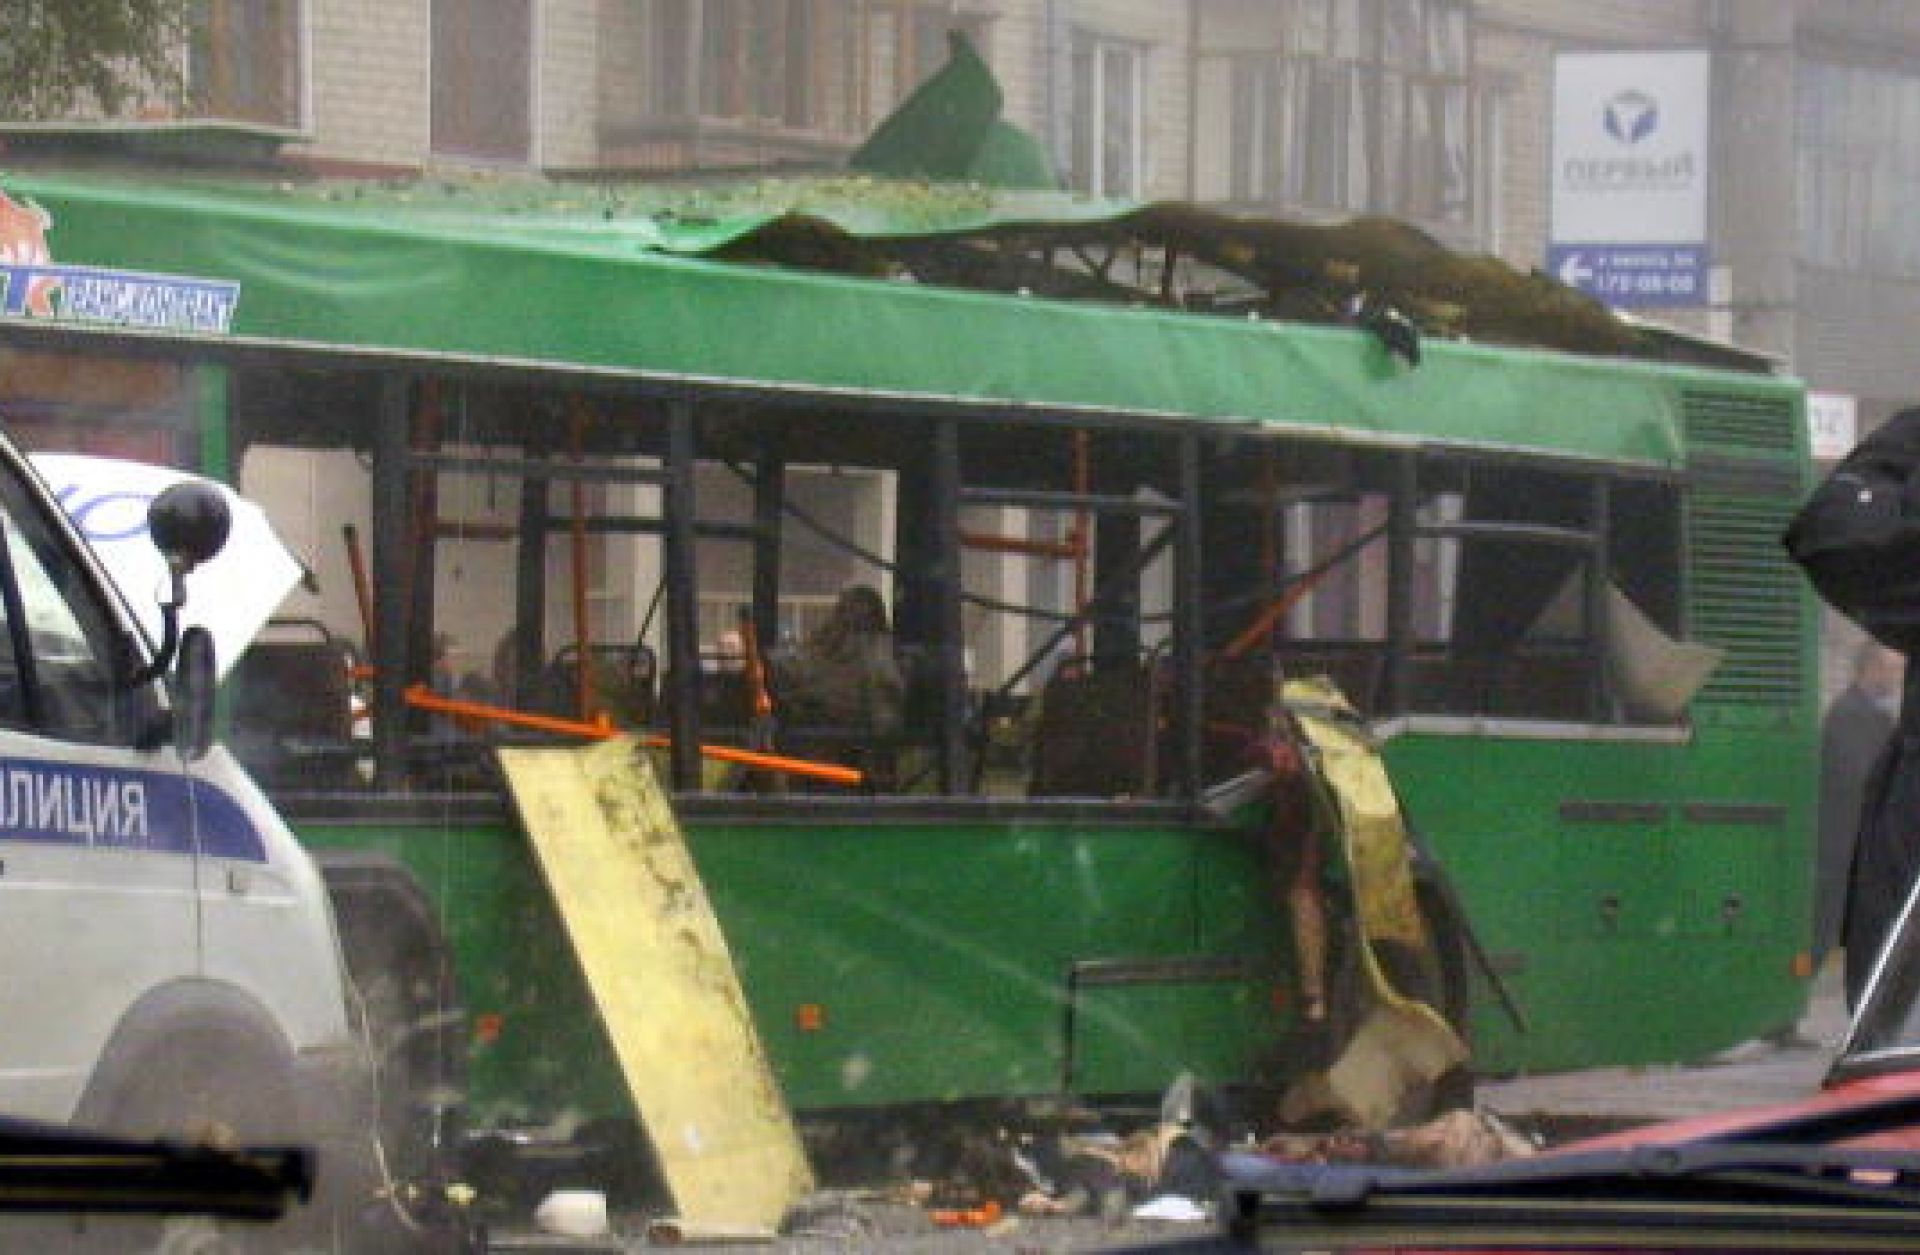 6 октября 2007. Взрыв автобуса в Тольятти 31.10.2007. Взрыв автобуса в Тольятти 31 октября. Взрыв автобуса в Тольятти 2007. Теракт Тольятти автобус 2007.